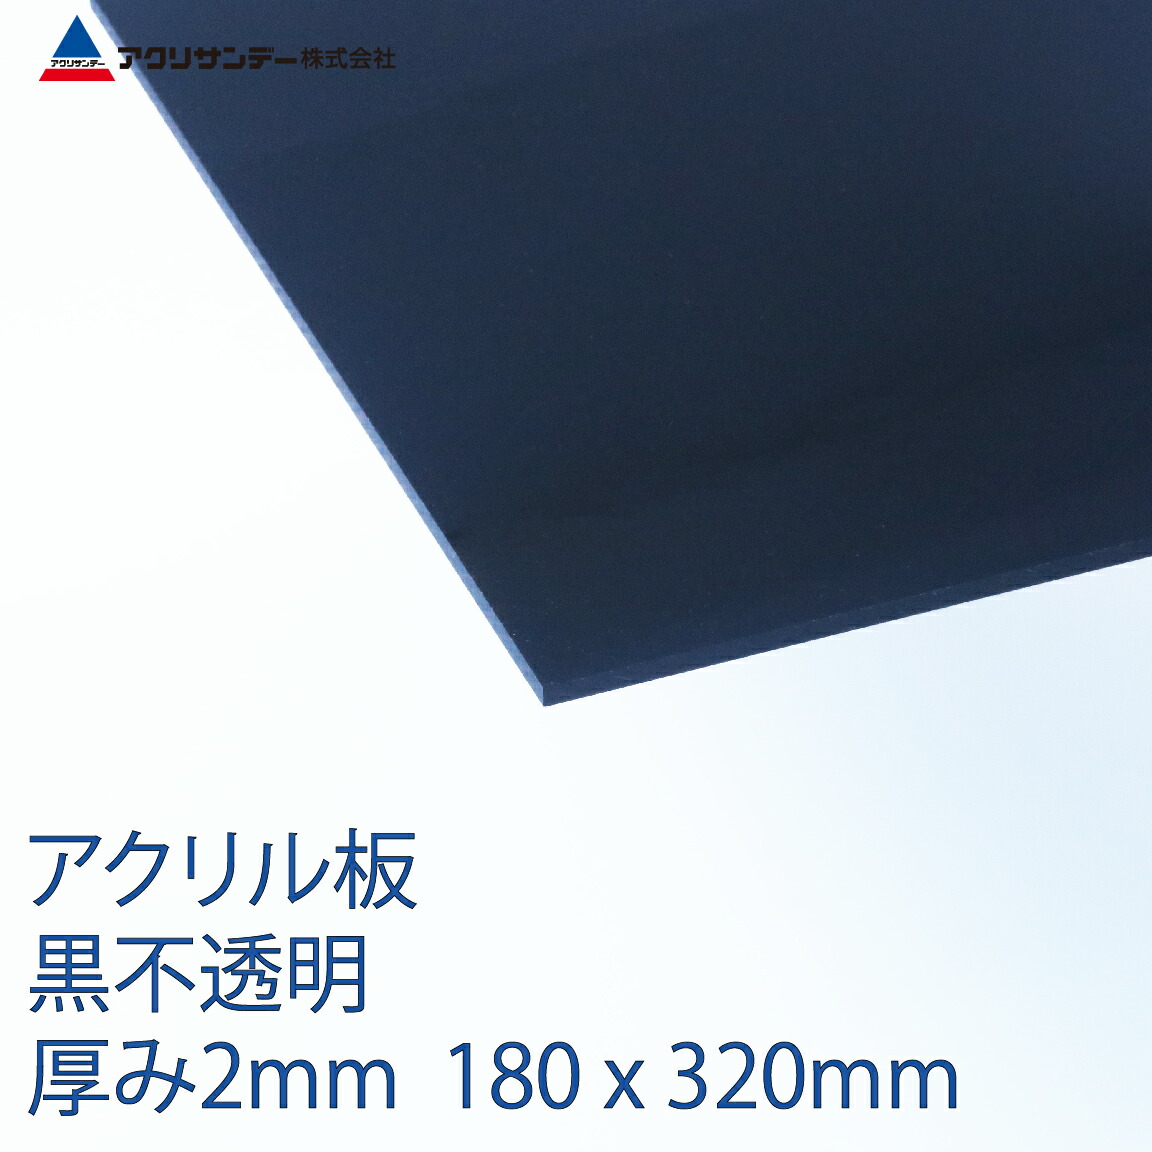 日本製 アクリル板 ブルースモーク(キャスト板) 厚み5mm 450X900mm